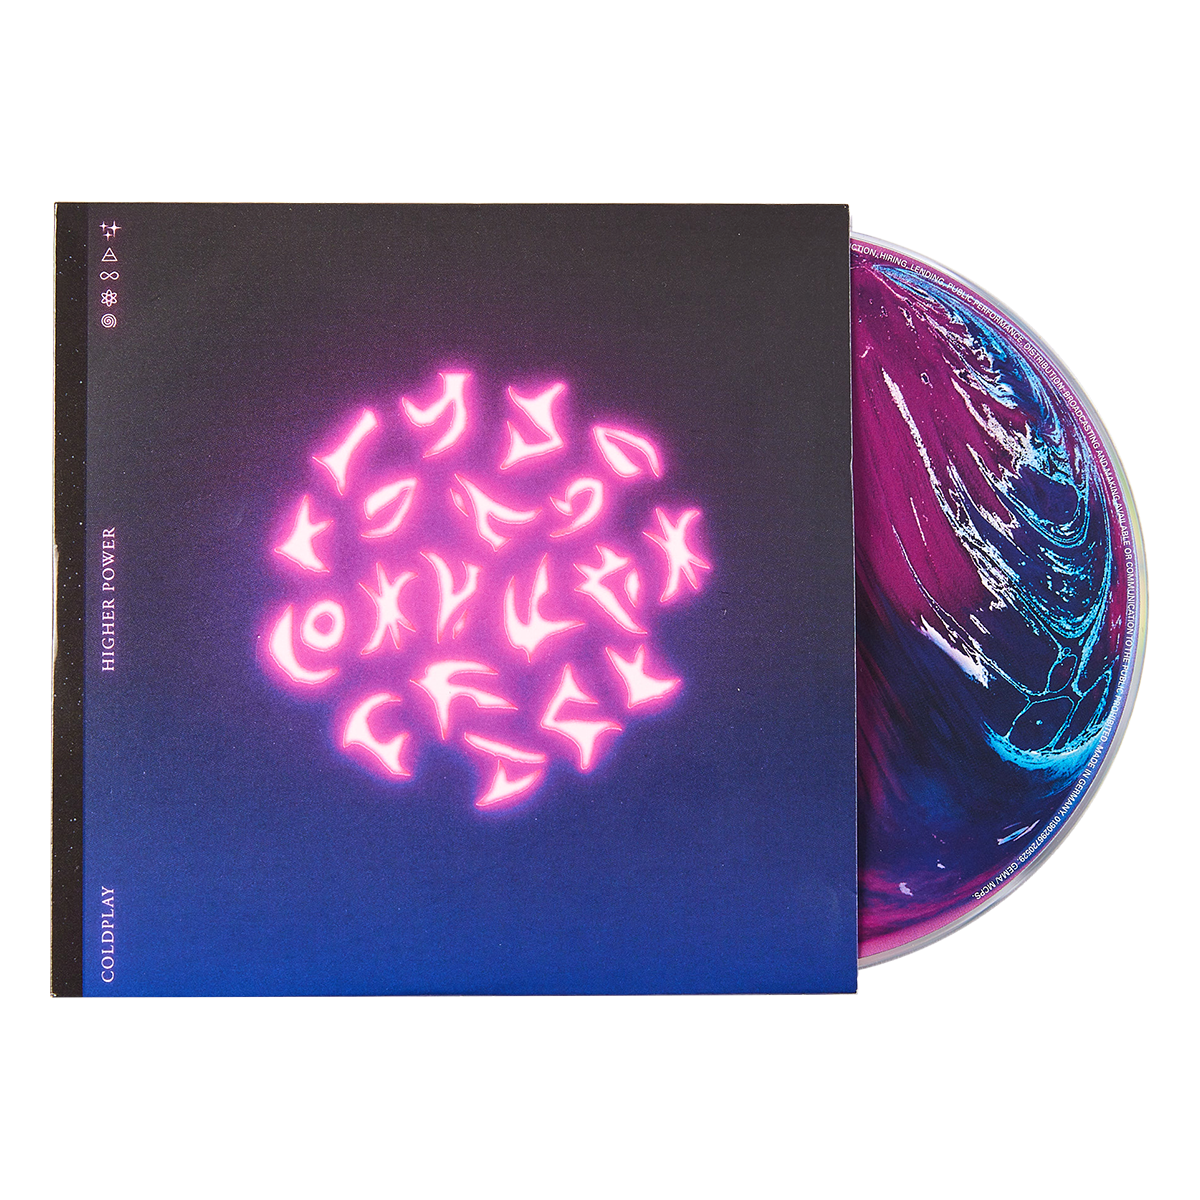 vermogen Darmen gevangenis Higher Power - CD Single – Coldplay US